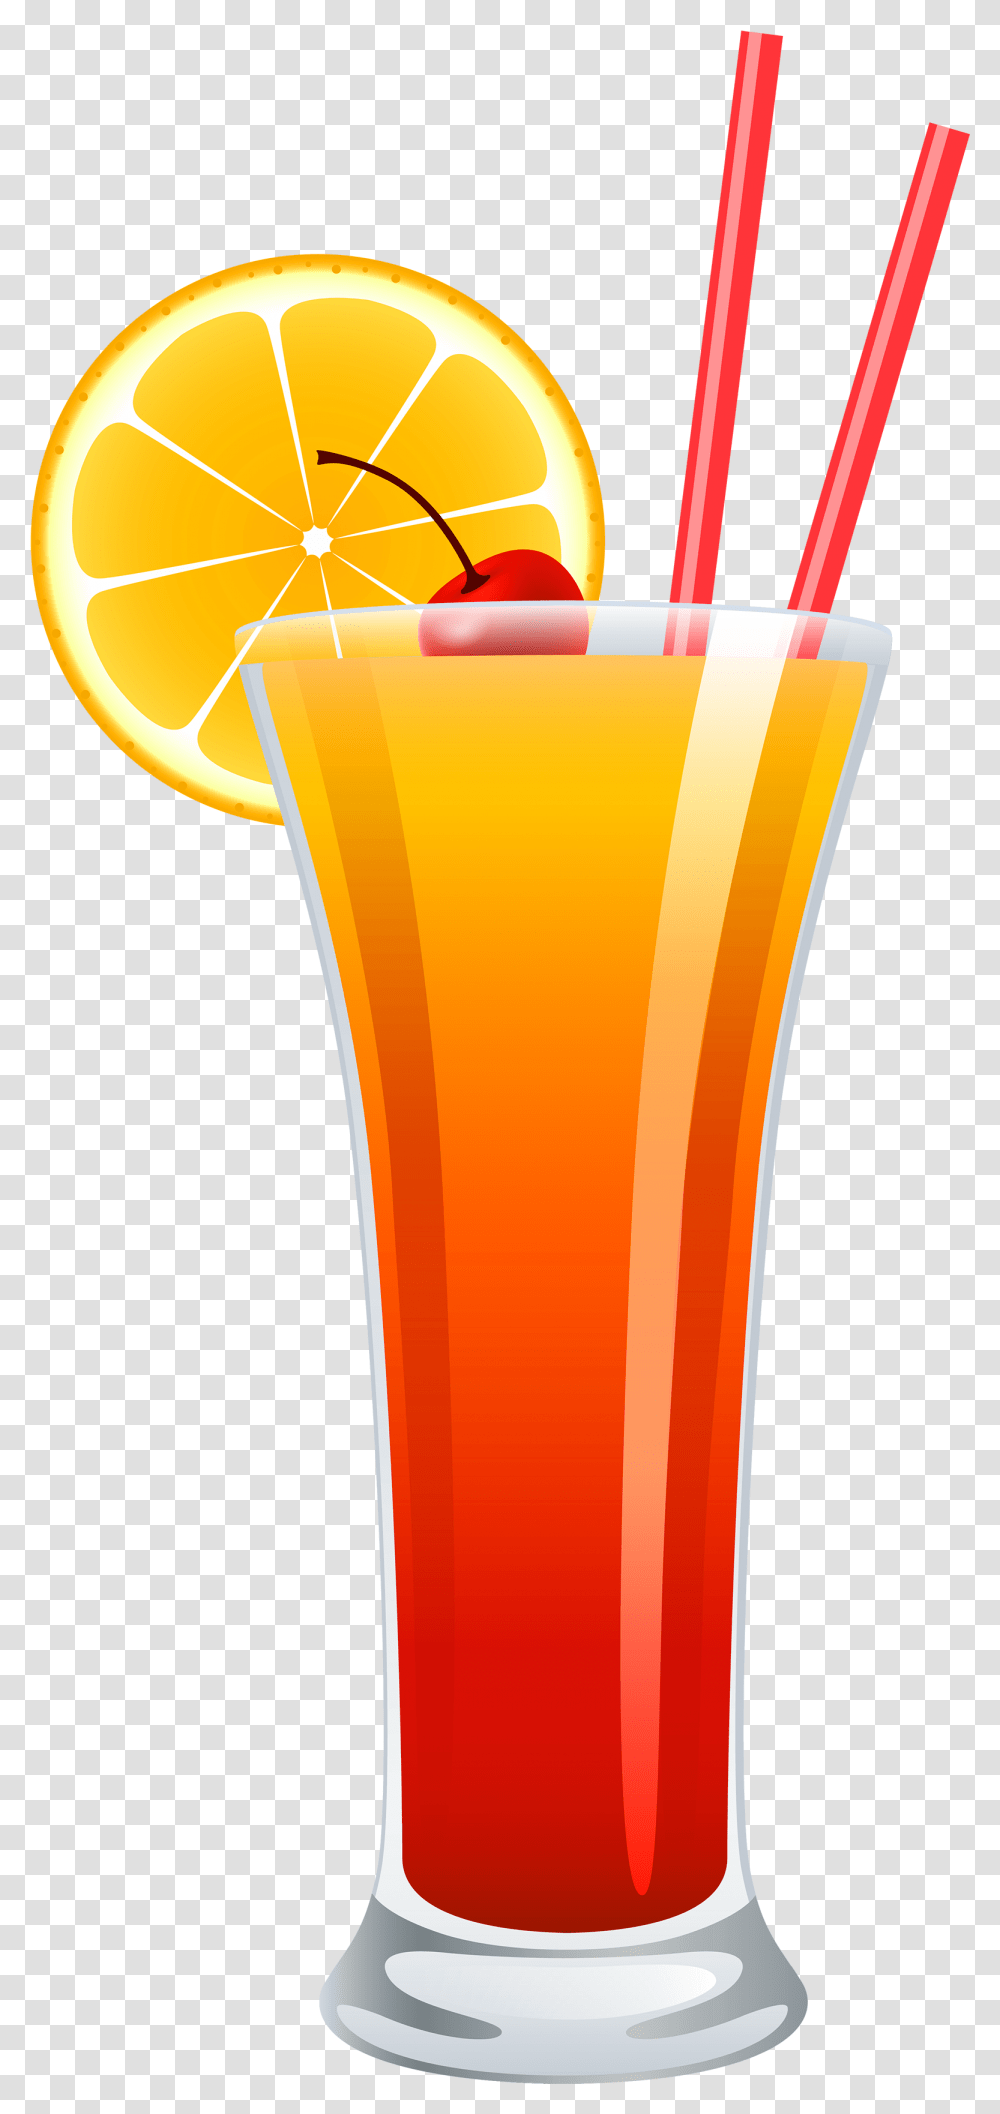 Cocktail Tequila Sunrise Cocktail, Juice, Beverage, Drink, Orange Juice Transparent Png